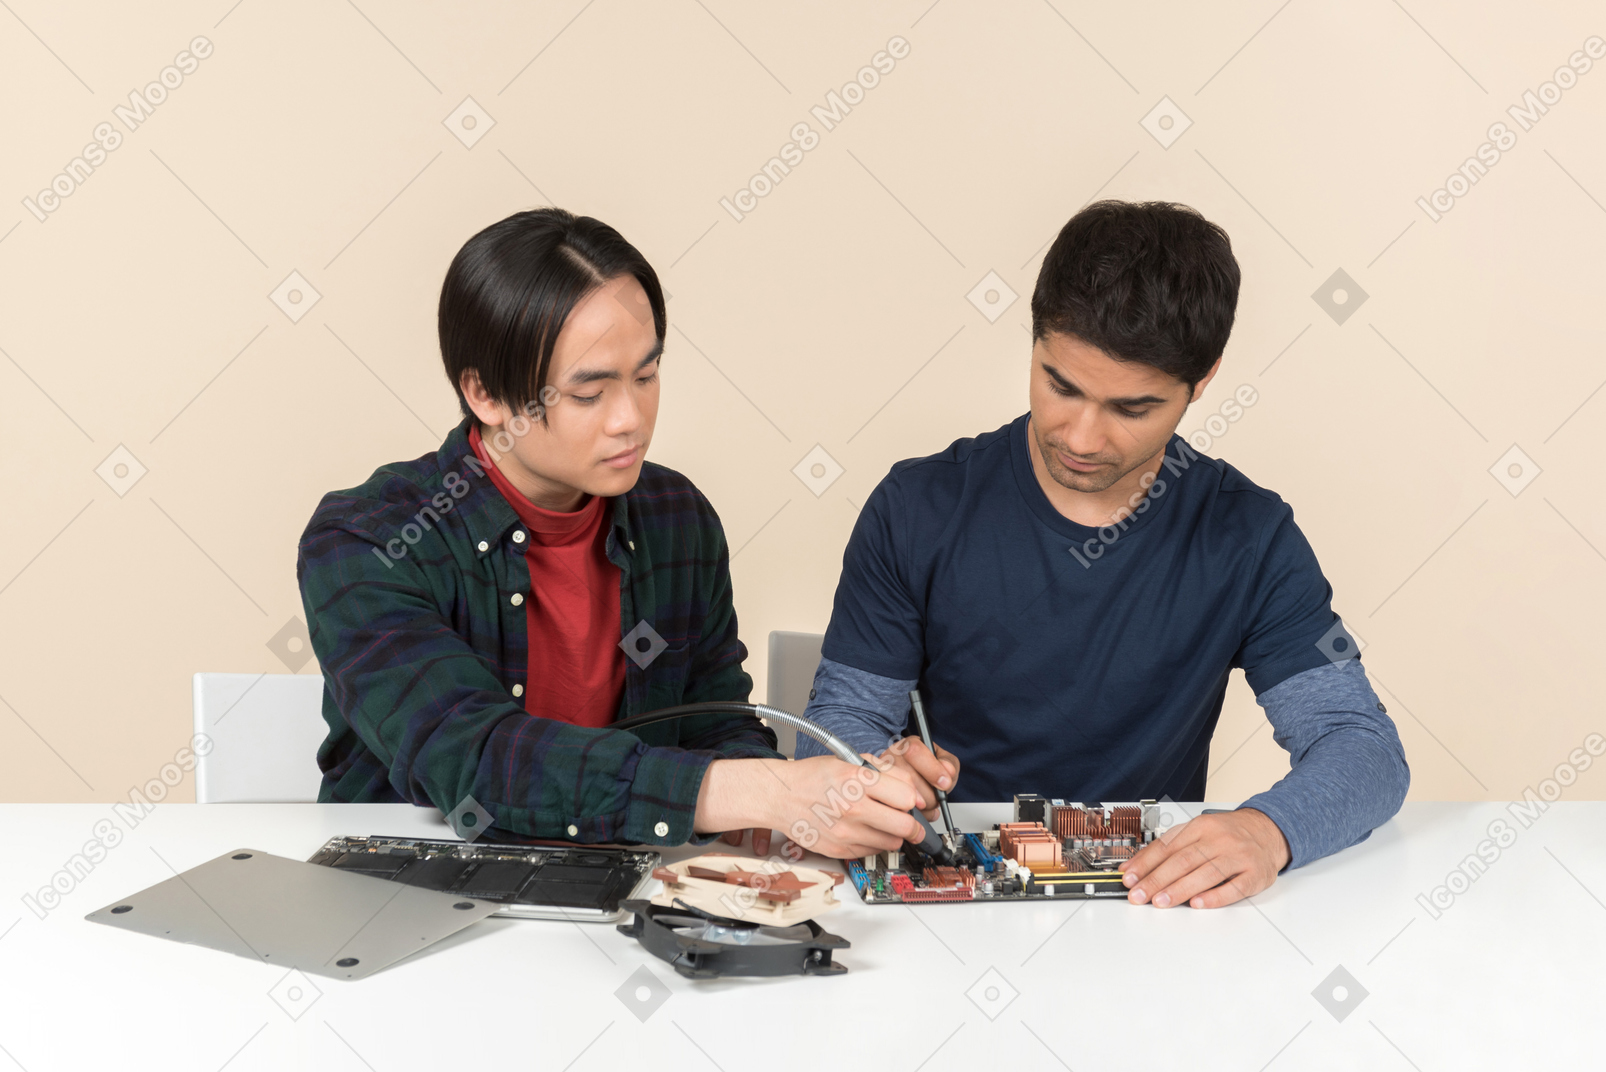 Dos jóvenes geeks con algunos detalles sobre la mesa que tienen algunos problemas